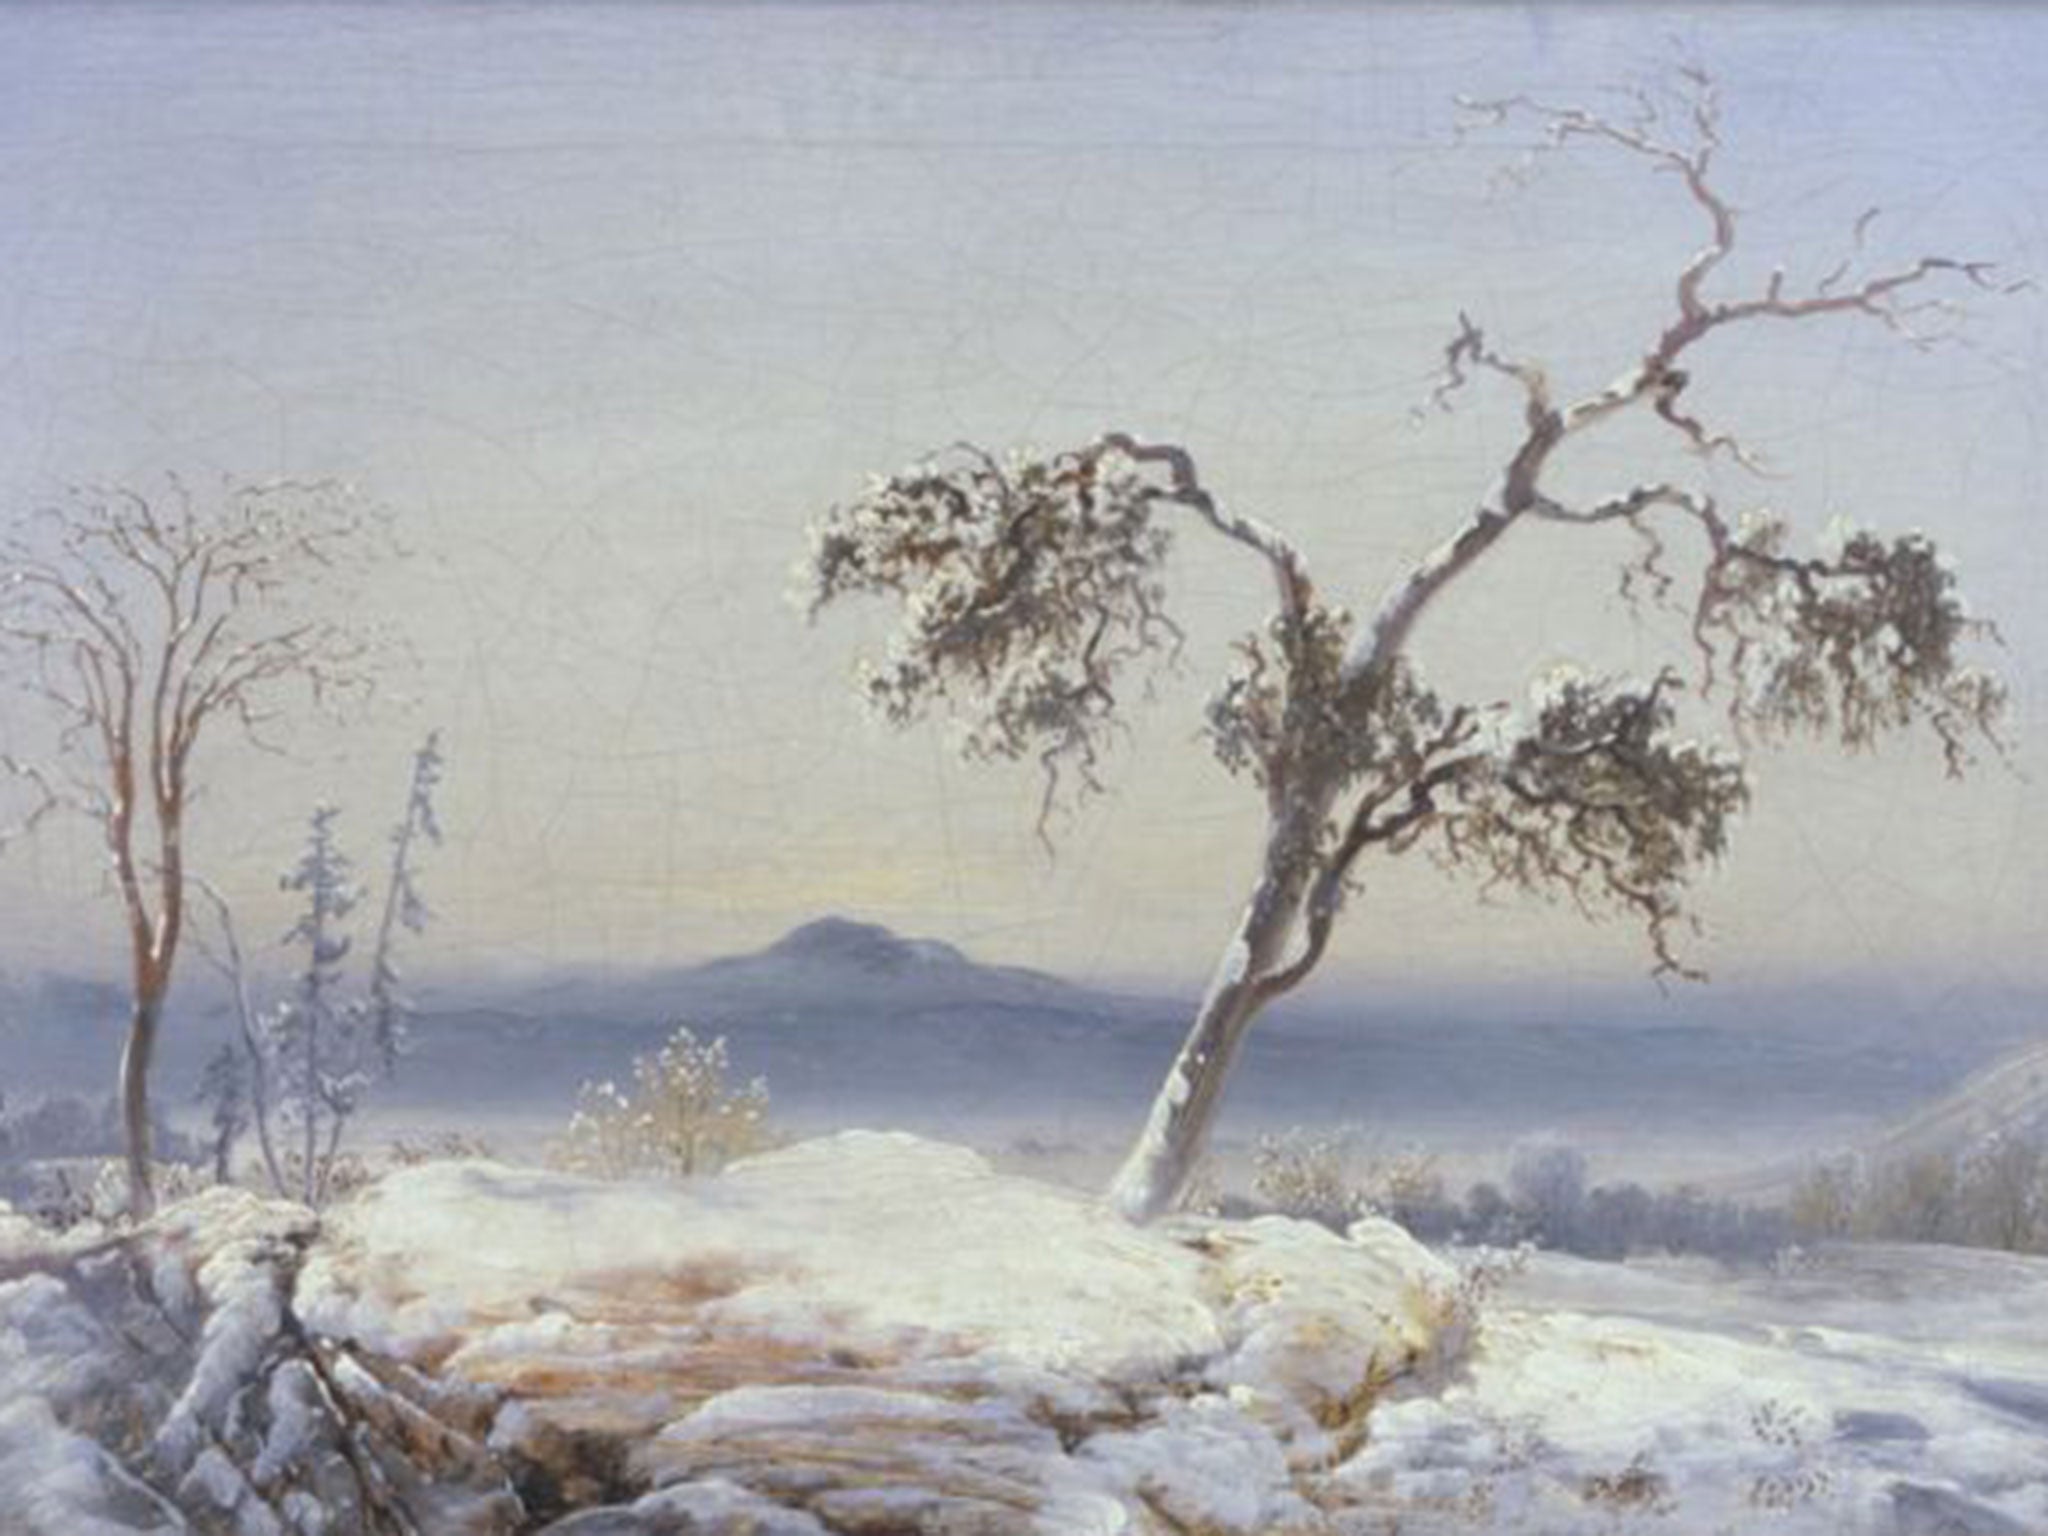 Peder Balke's ‘Landscape from Finnmark’